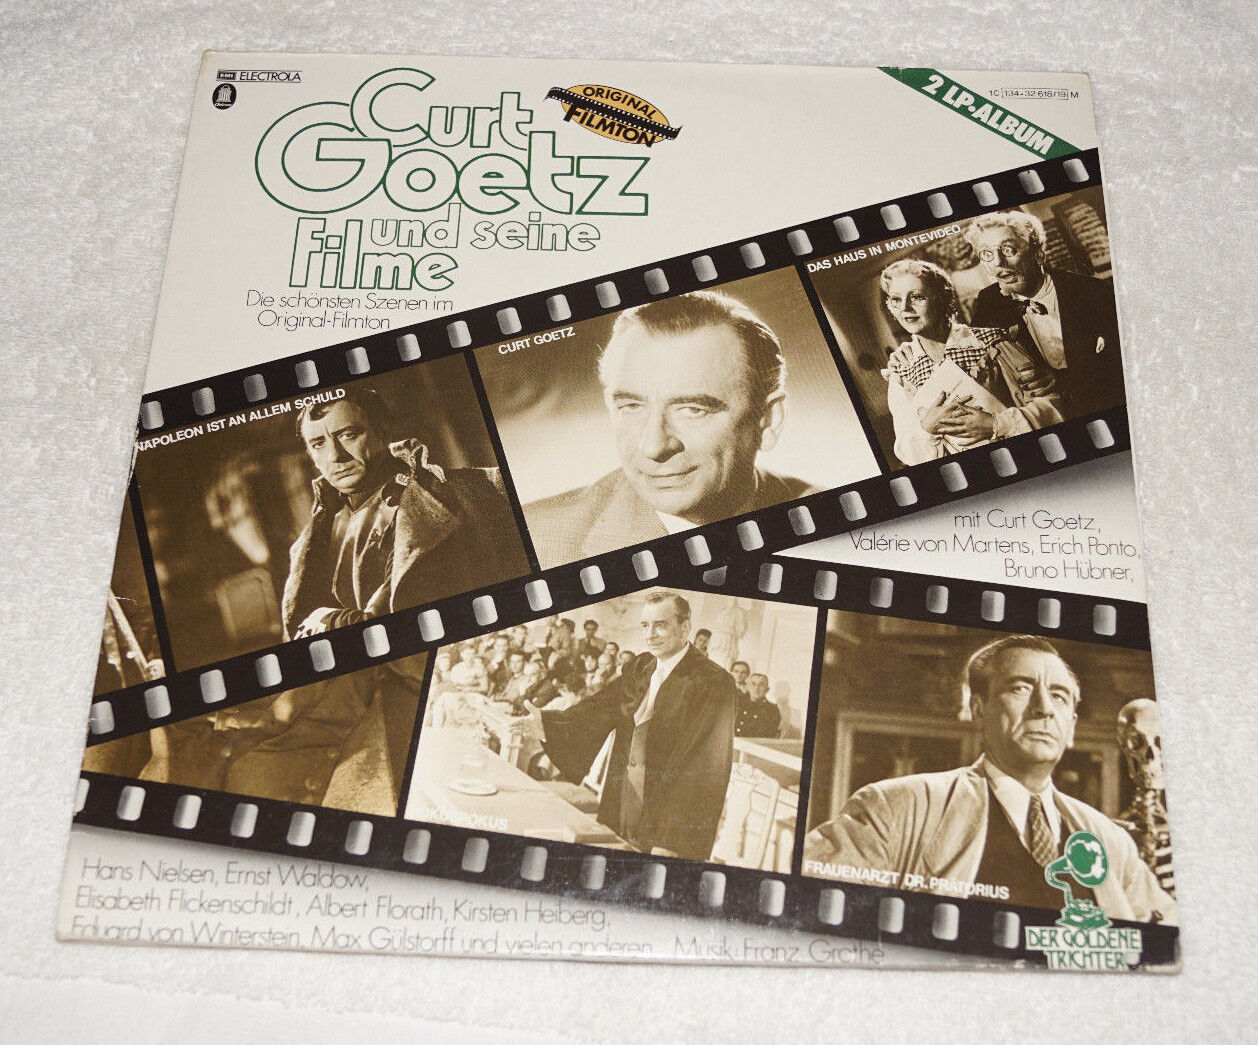 LP : Curt Goetz und seine Filme - 2 discs - film music - Made in Germany